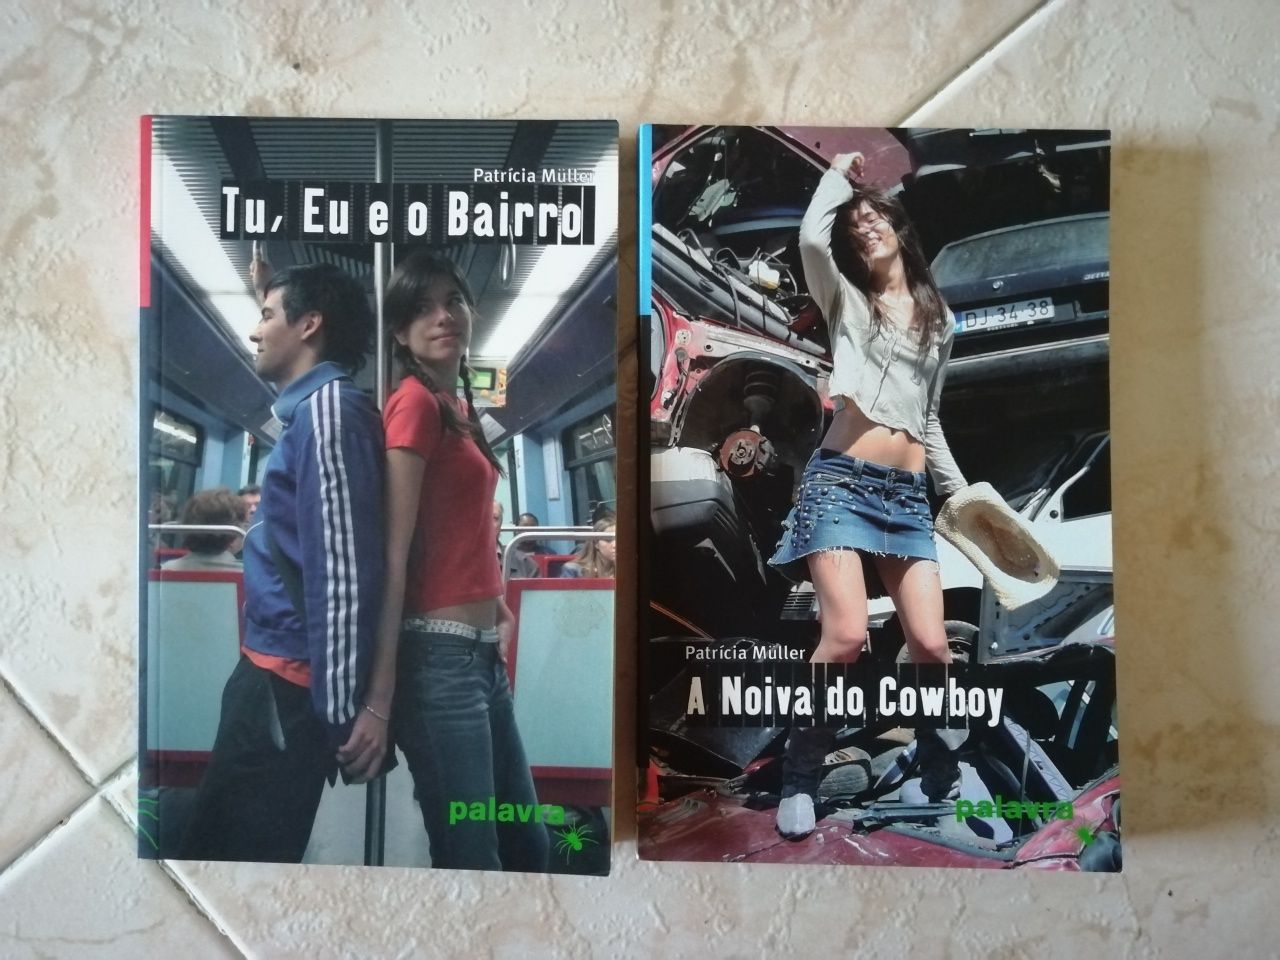 Livros: "Tu, eu e o Bairro" e "A noiva do cowboy" de Patrícia Müller